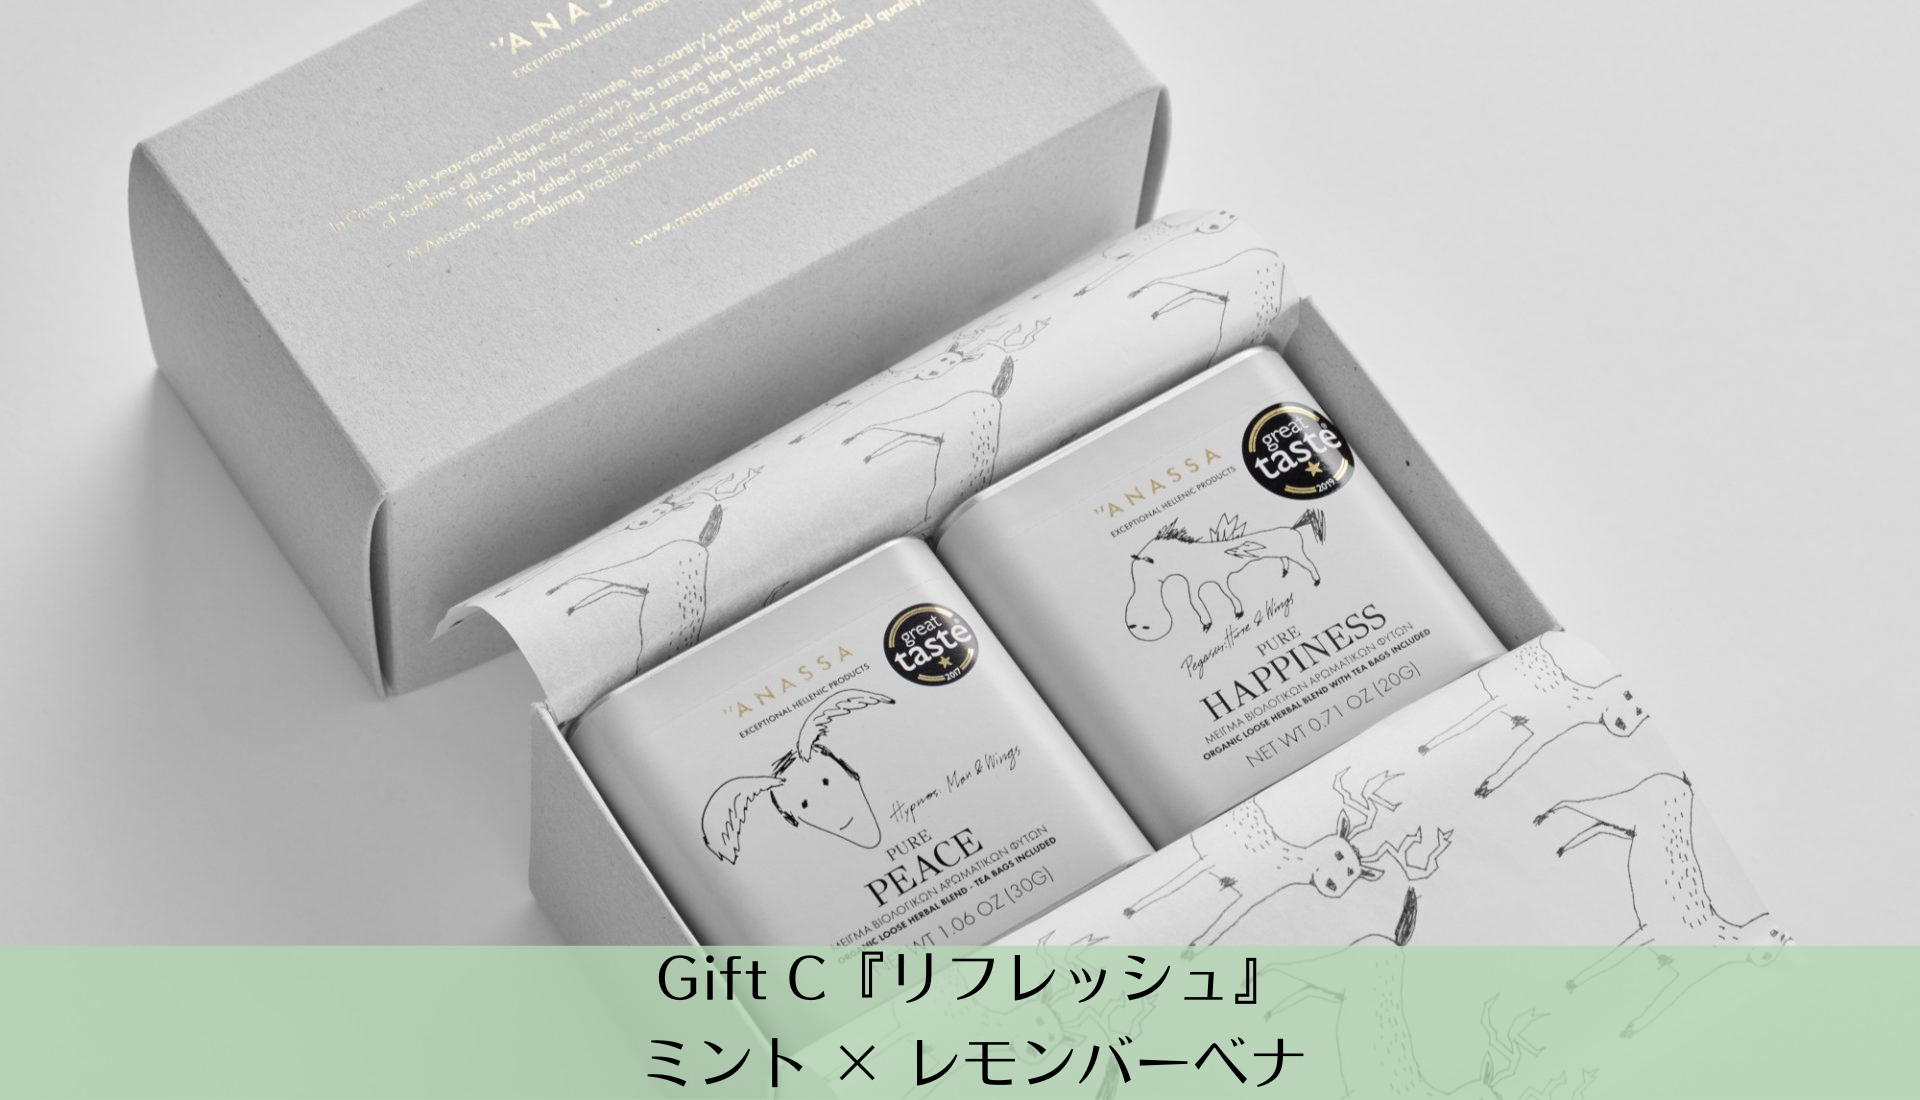 【4月中旬販売再開予定】アナッサ・ギフトセット 2缶入り Gift C_リフレッシュ【ANASSA】